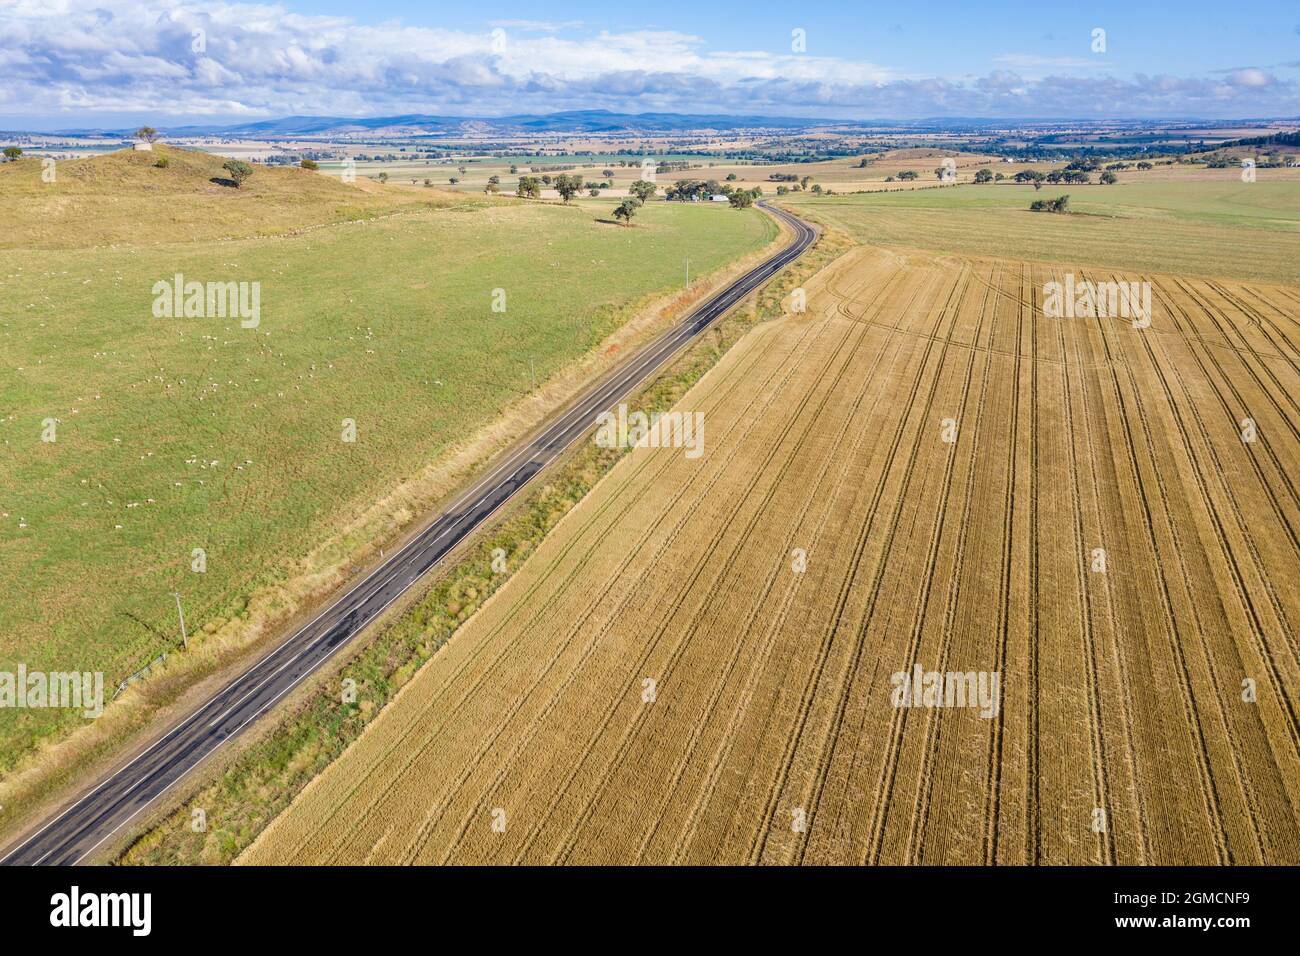 Vue aérienne des terres agricoles entre Cowra et Canowindra dans le centre-ouest de la Nouvelle-Galles du Sud. Cette zone est un lieu agricole fertile. Banque D'Images